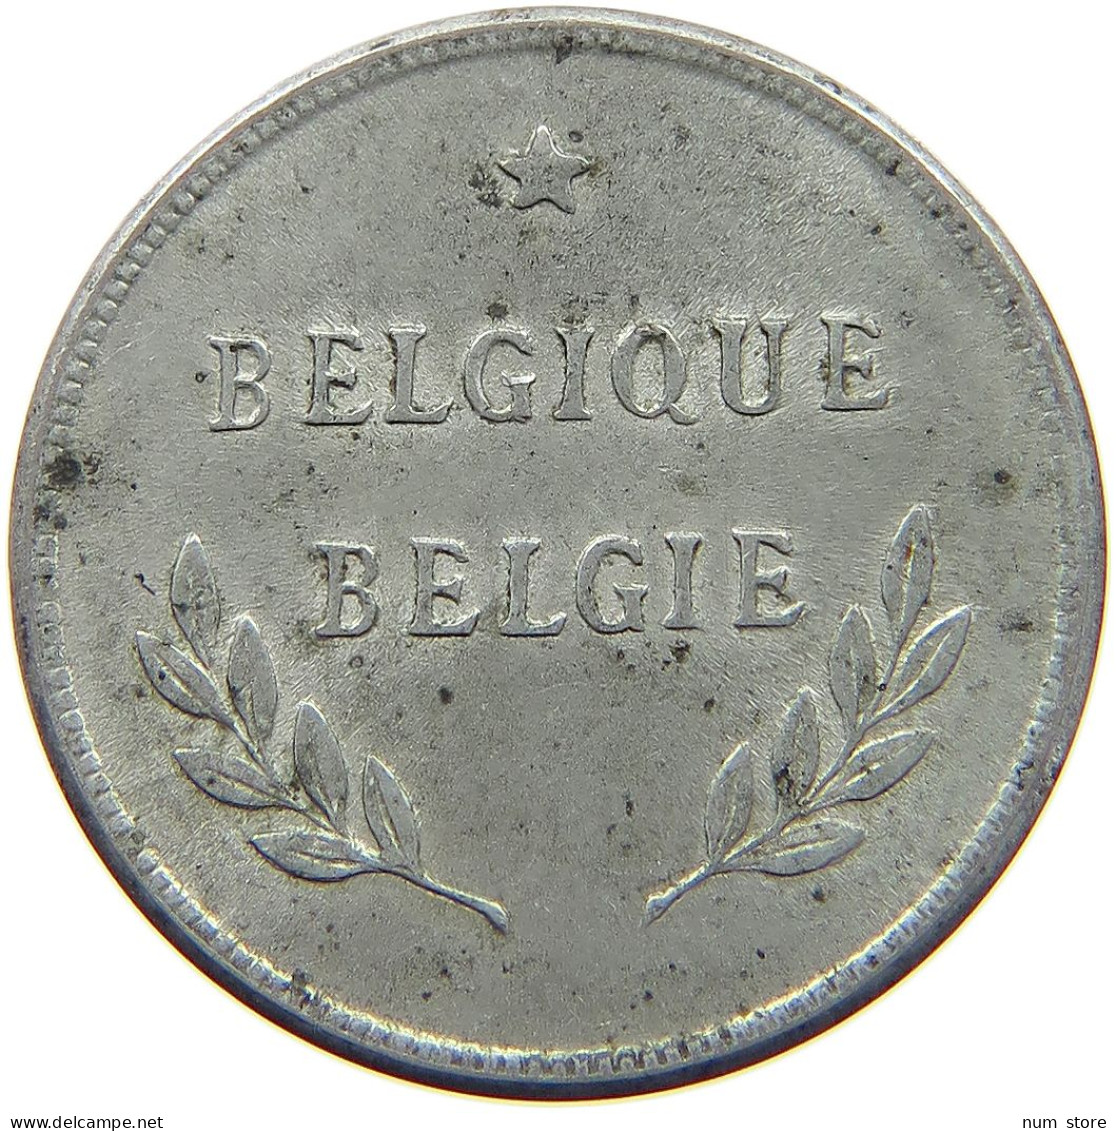 BELGIUM 2 FRANCS 1944 #c007 0281 - 2 Frank (1944 Befreiung)